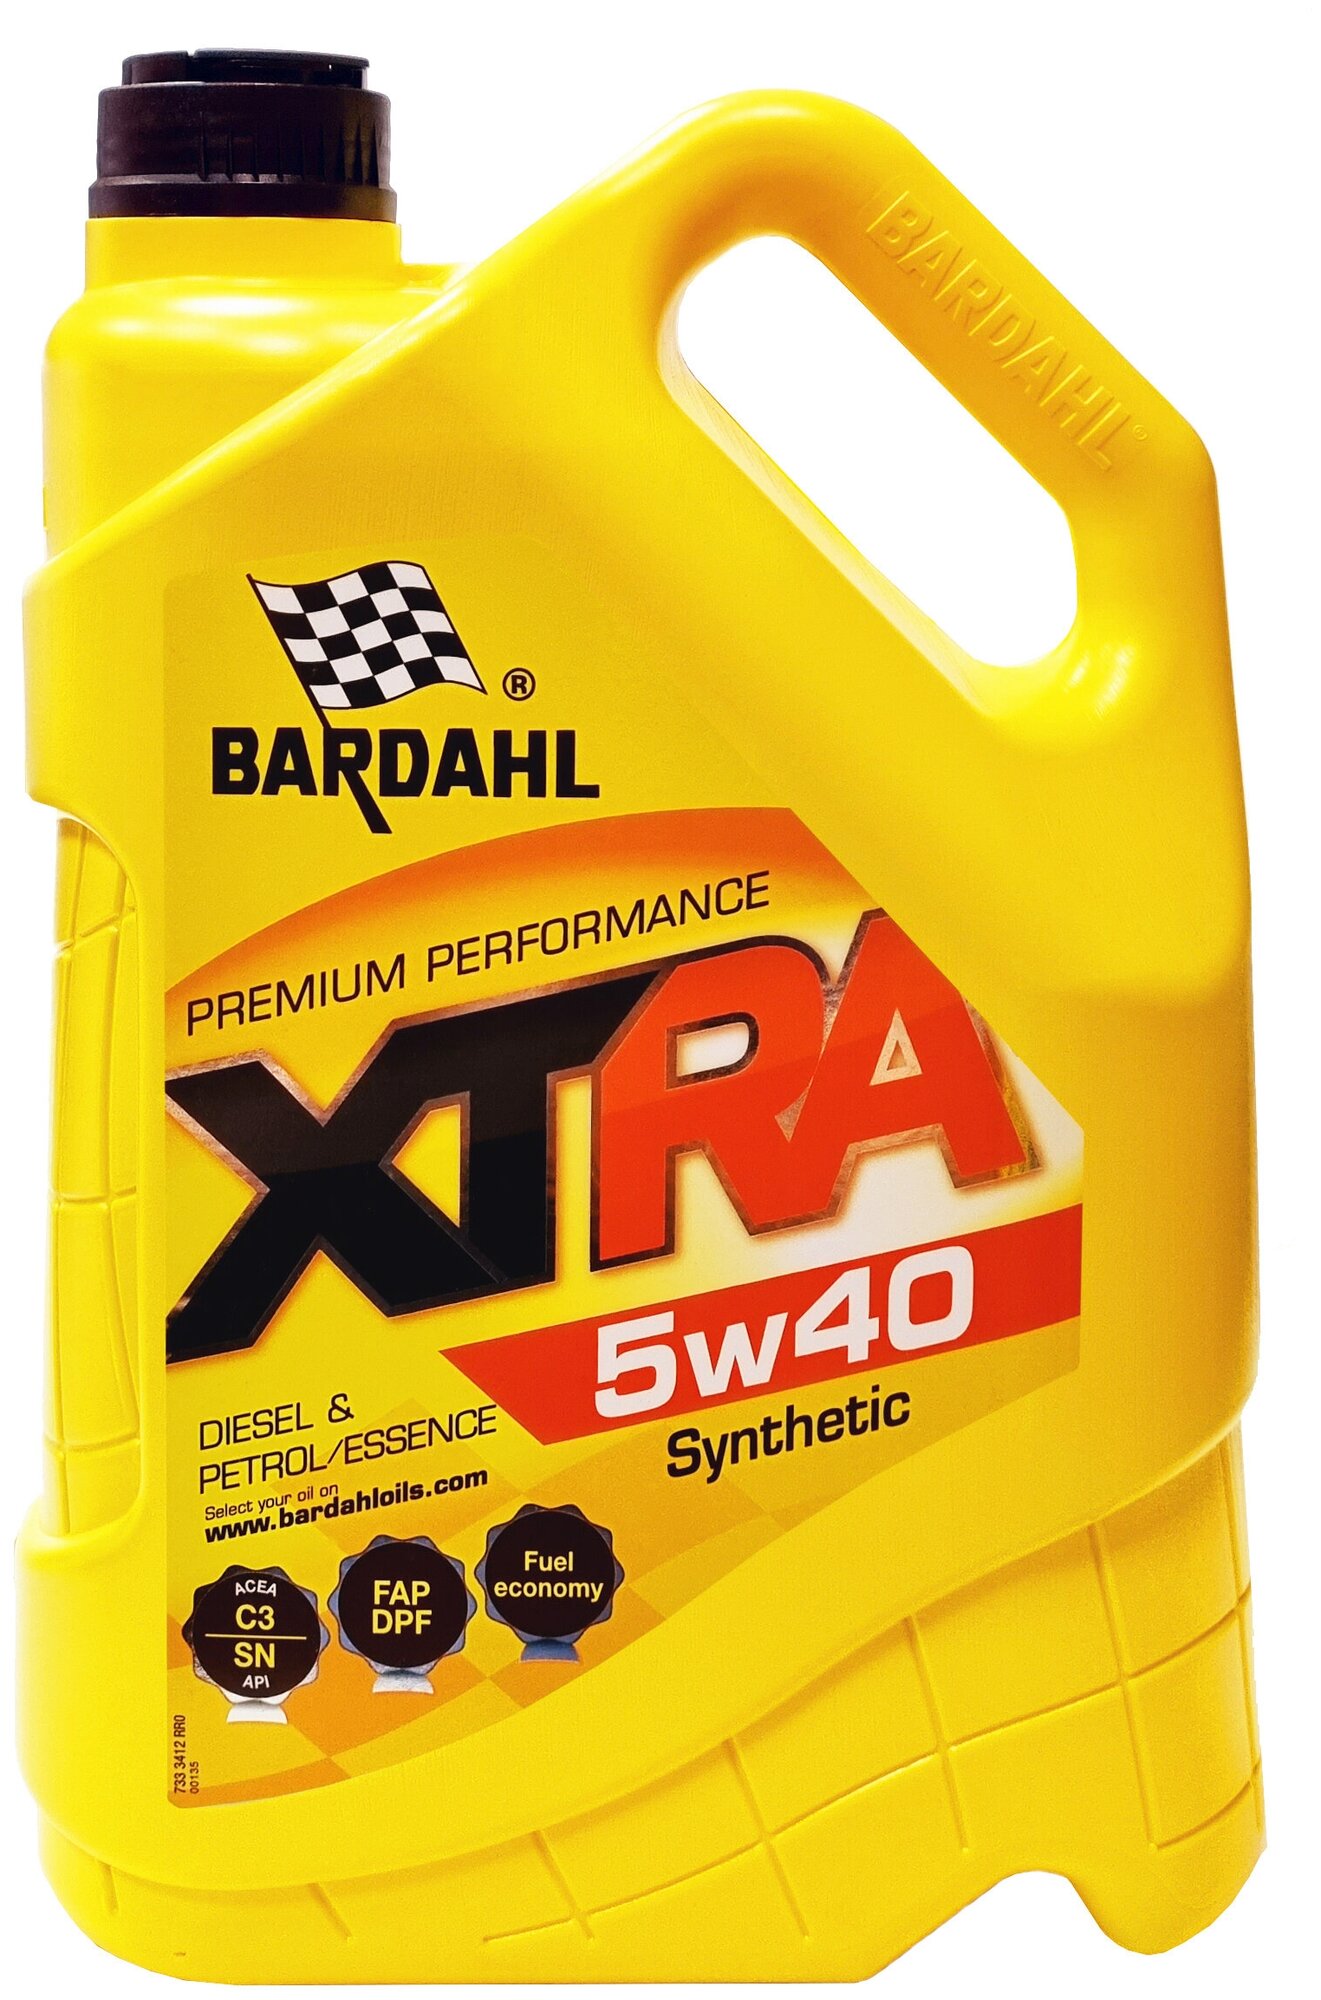 Масло моторное Bardahl XTRA 5w40 синтетическое API SN, ACEA C3, универсальное, 5л, арт. 34123